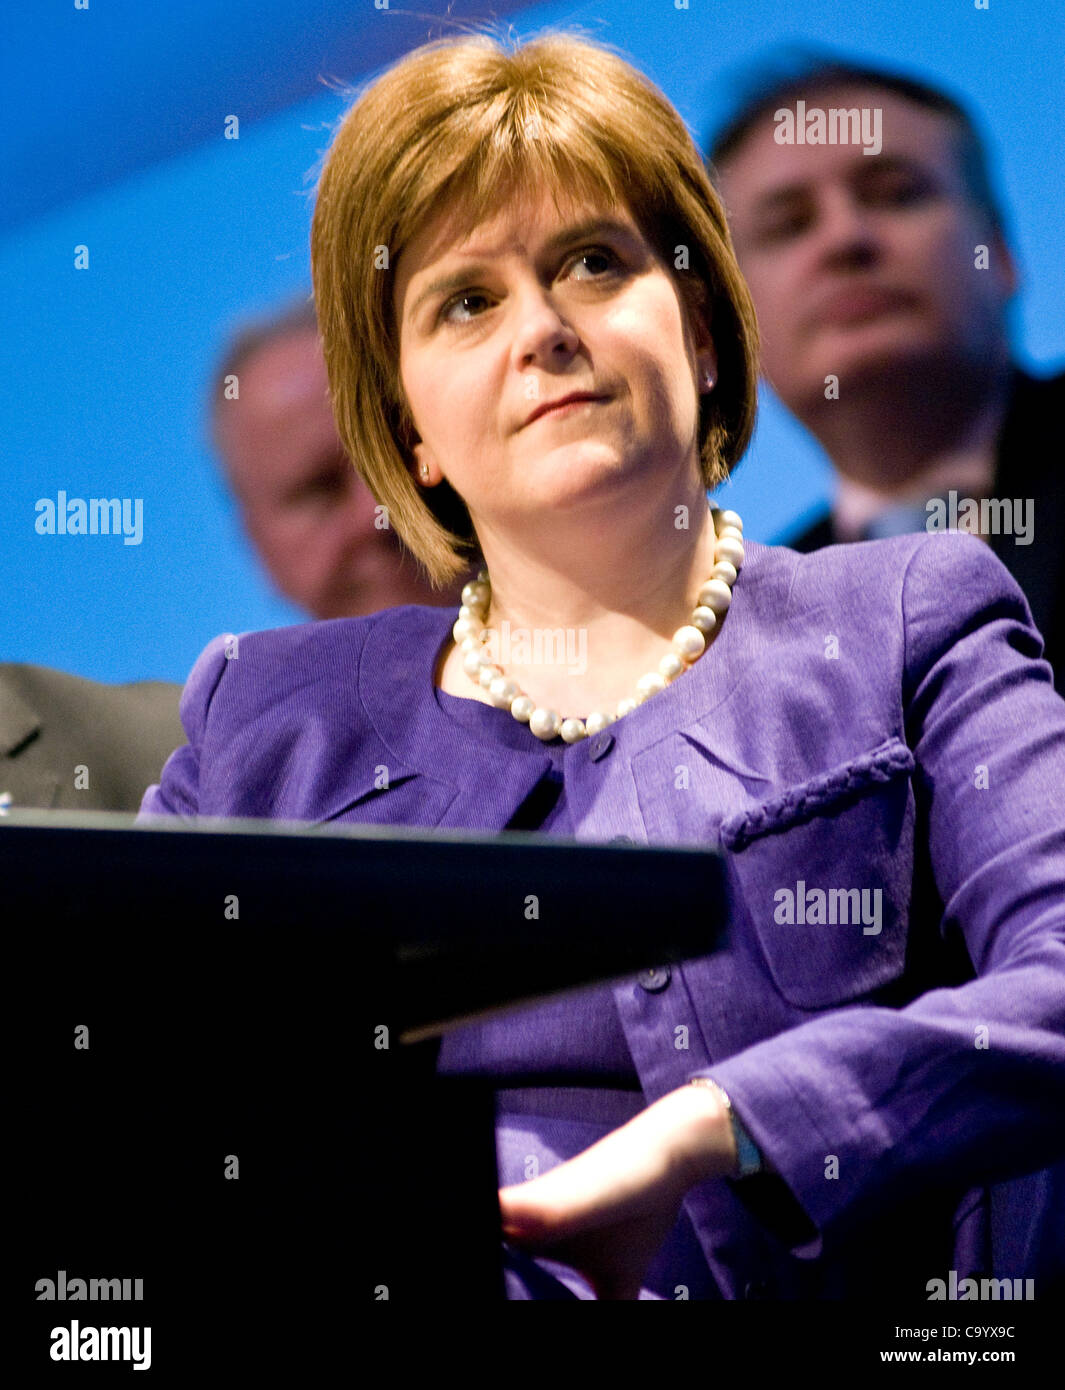 Glasgow, Regno Unito. 10 mar 2012. Nicola storione, guarda come Alex Salmond, Scottish primo ministe,r risolve il SNP conferenza di primavera, che ha avuto luogo a Glasgow il SECC. Immagine: Wullie Marr/ Alamy Foto Stock